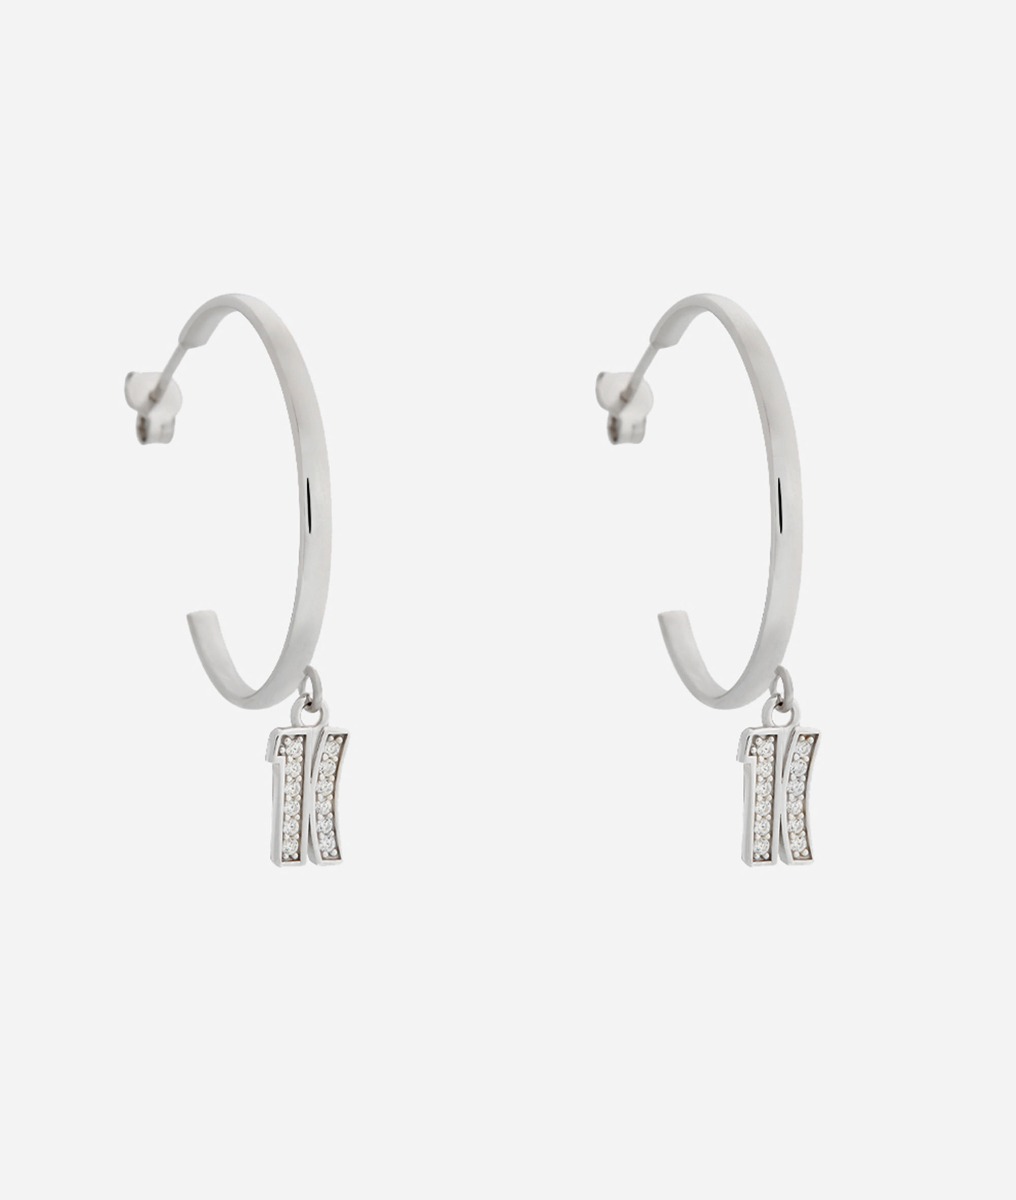 Fifth Avenue orecchini a cerchio con logo 1C in zirconi bianchi in Argento